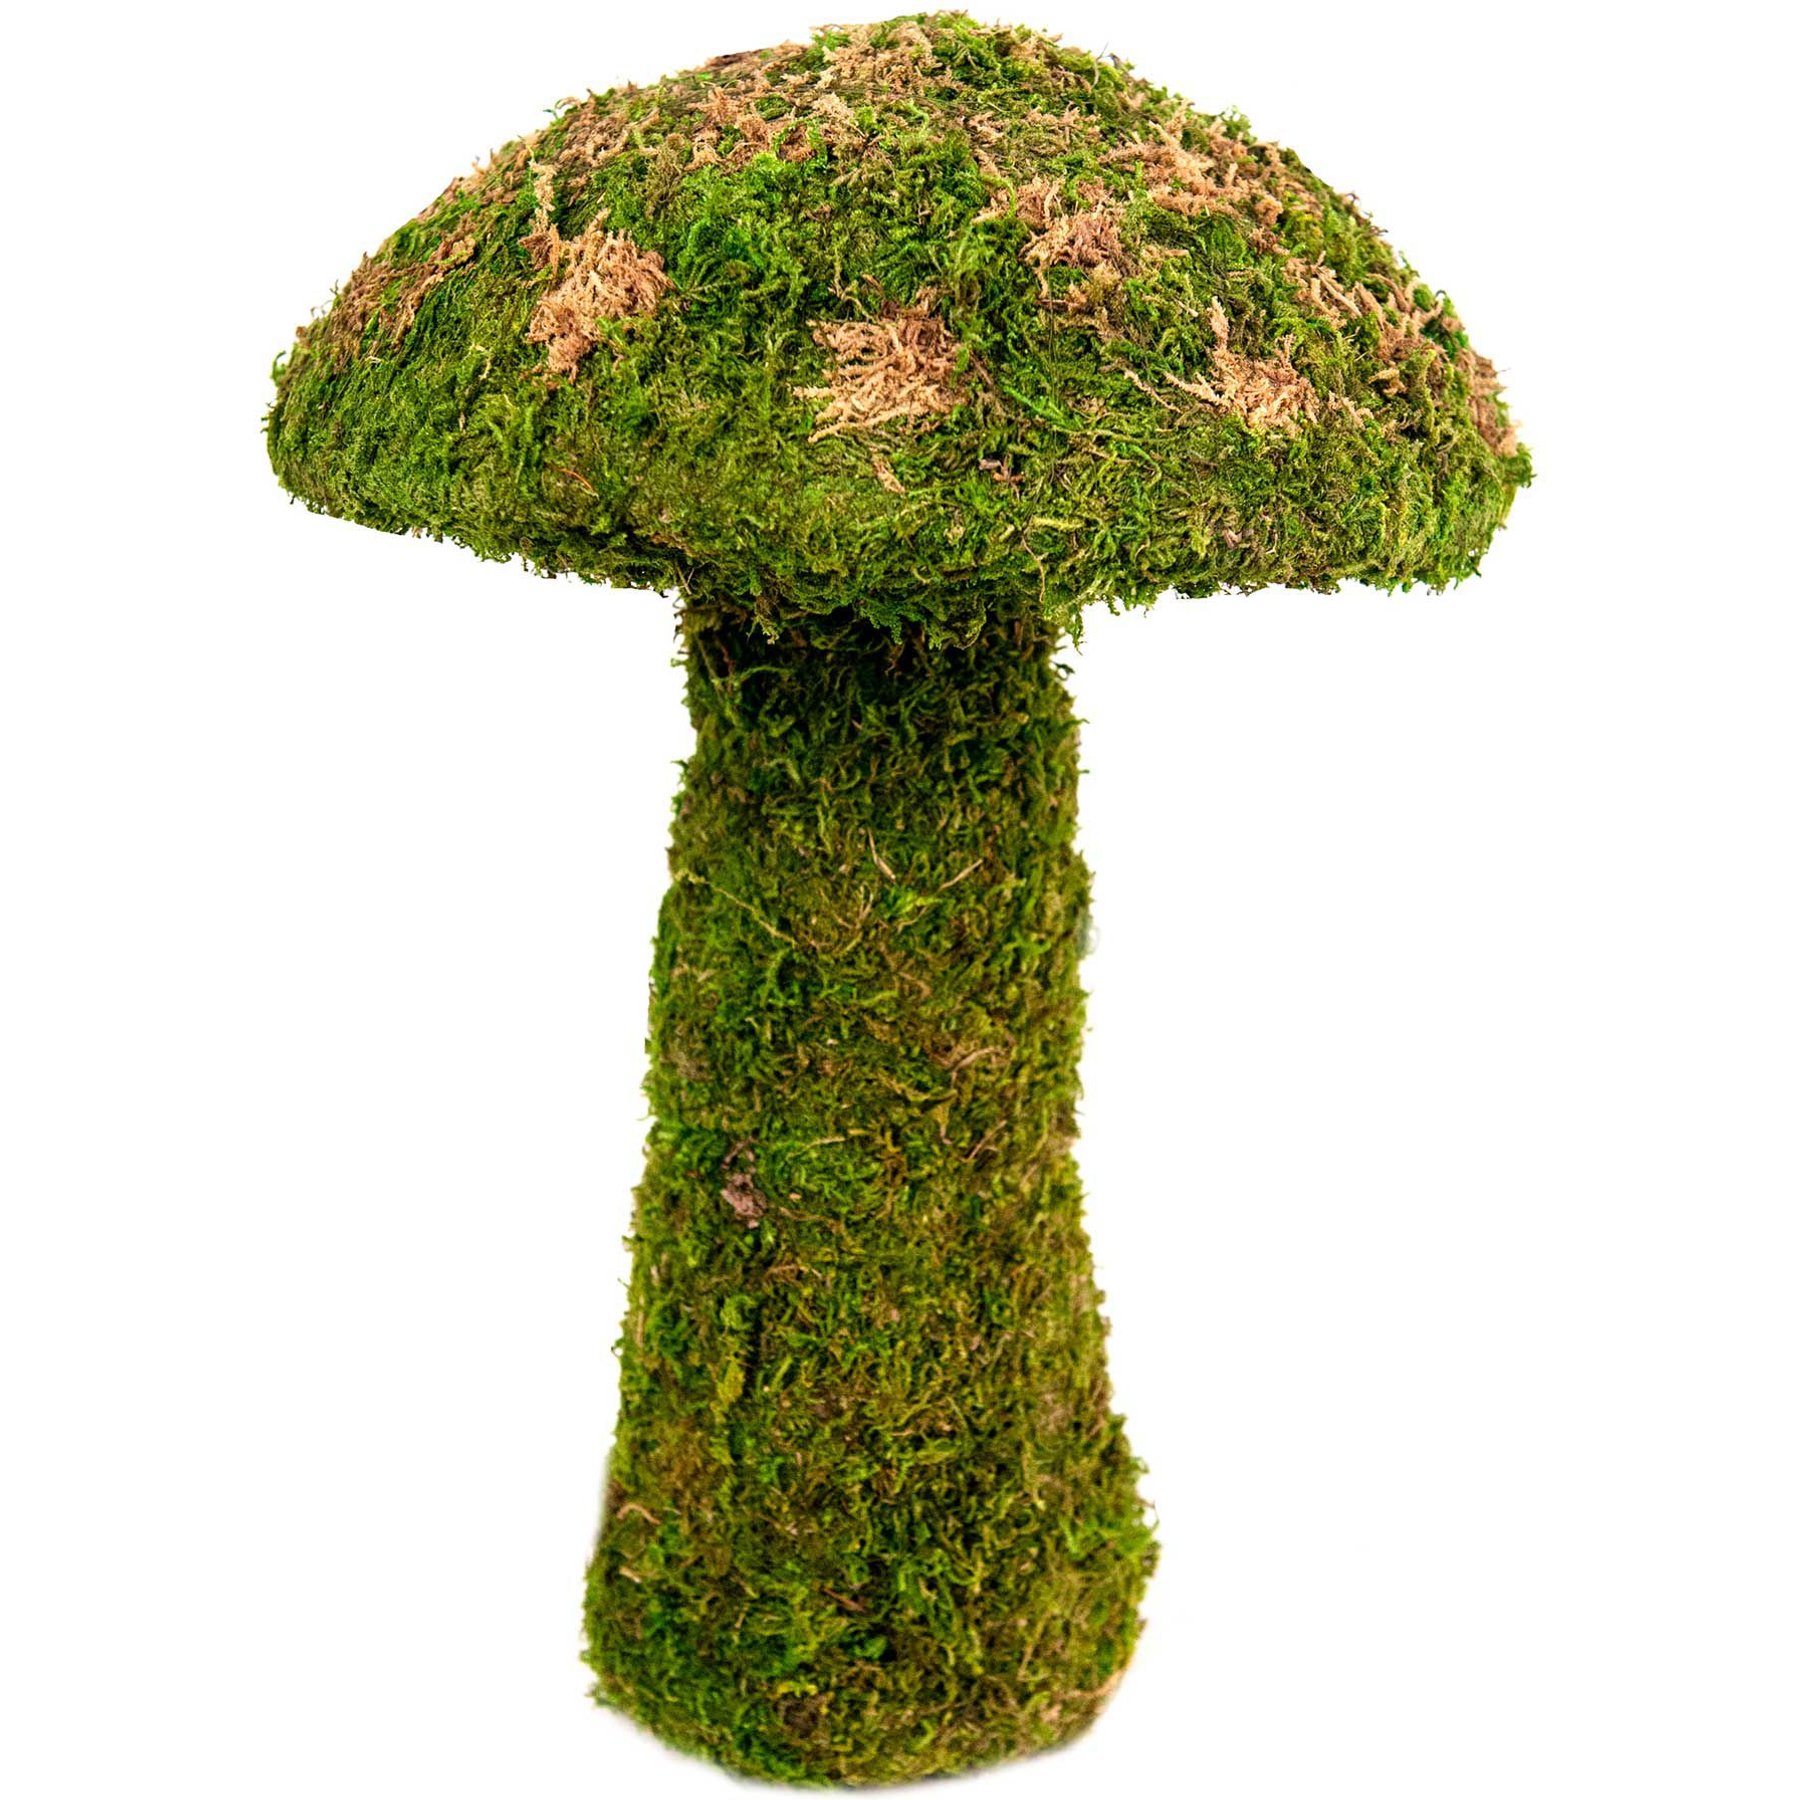 mushrooms, fake mushrooms,wooodland